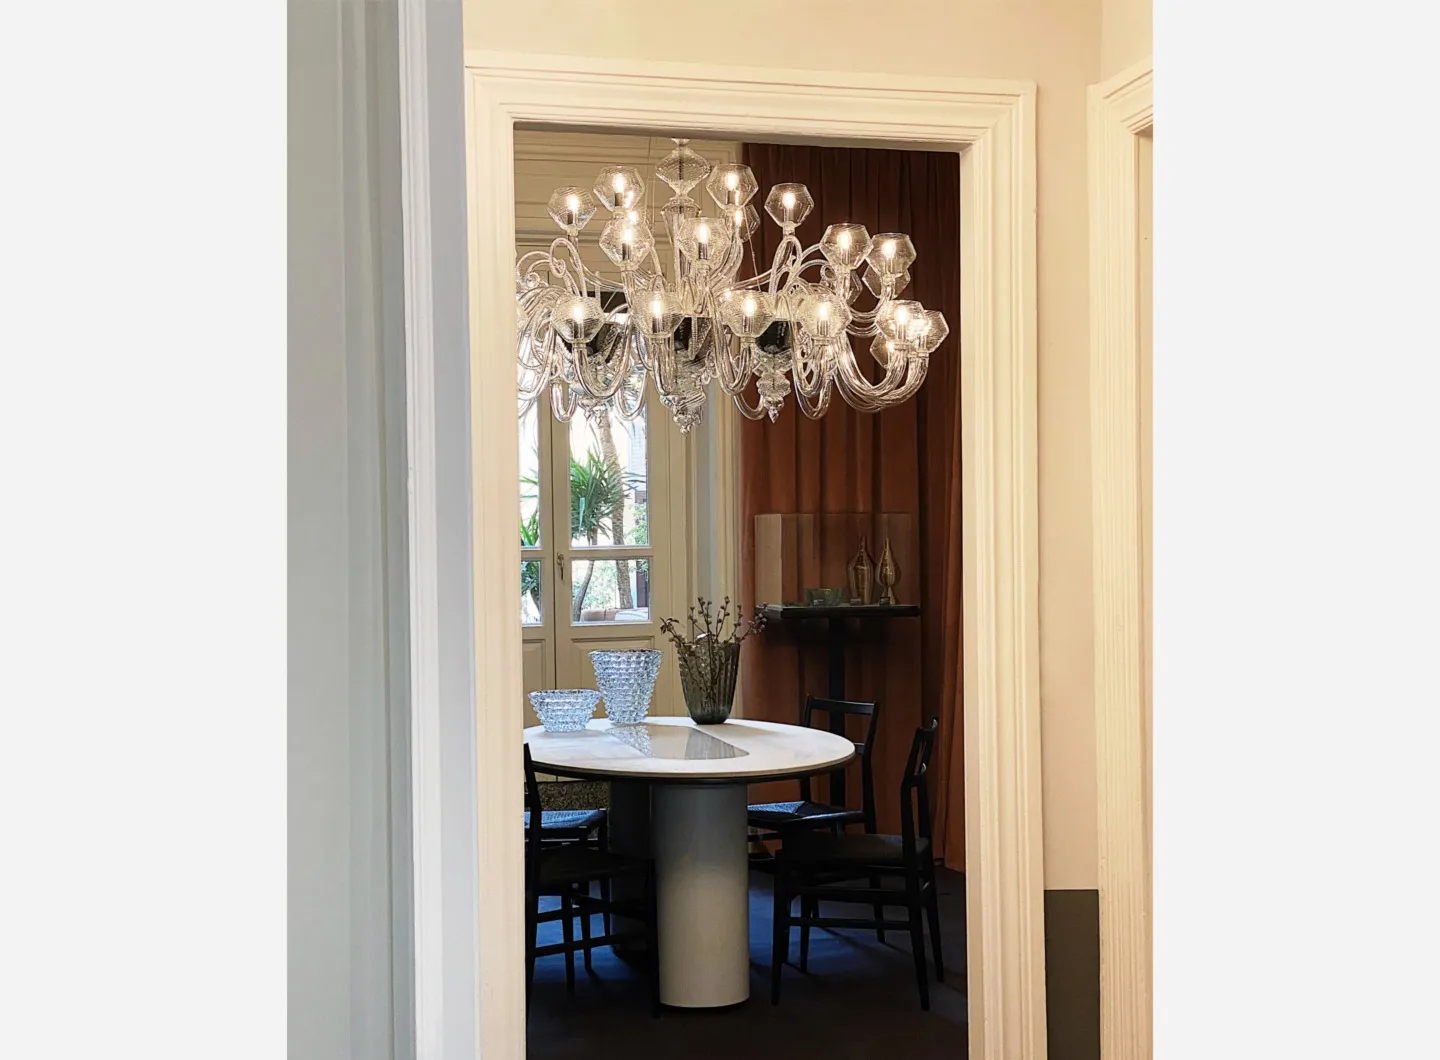 Magritte chandelier